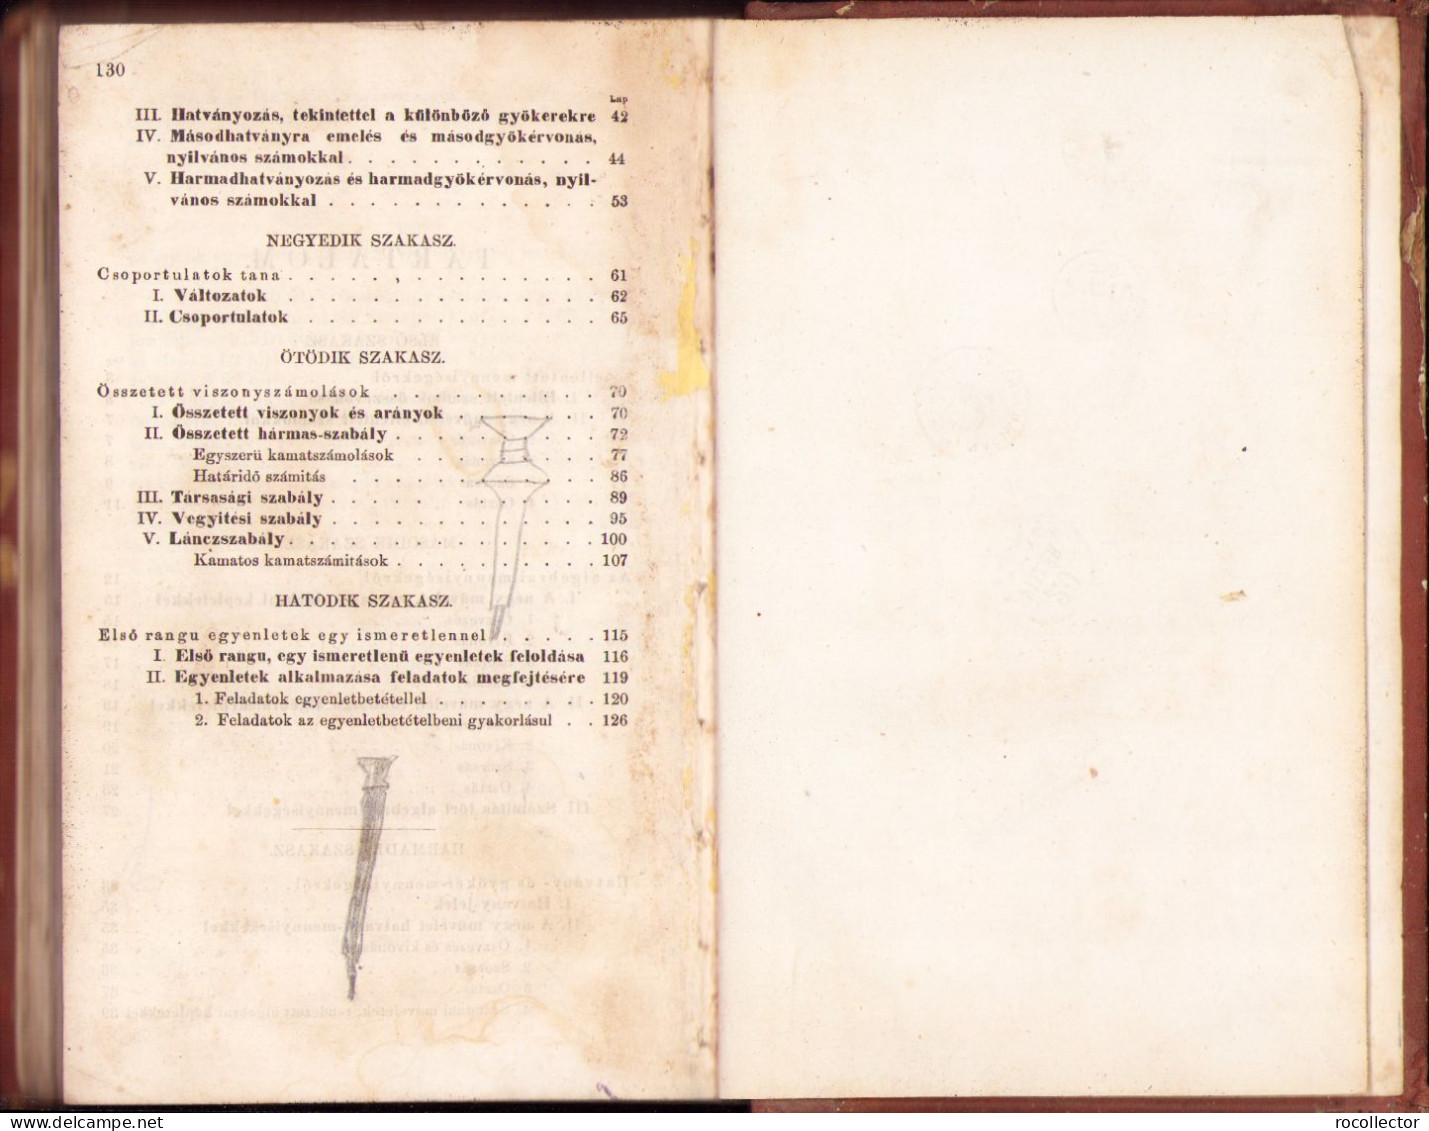 Számitástan (Arithmetica) Alsó gymnasiumok számára irta Mocnik Ferencz, 1865, Pest 377SP